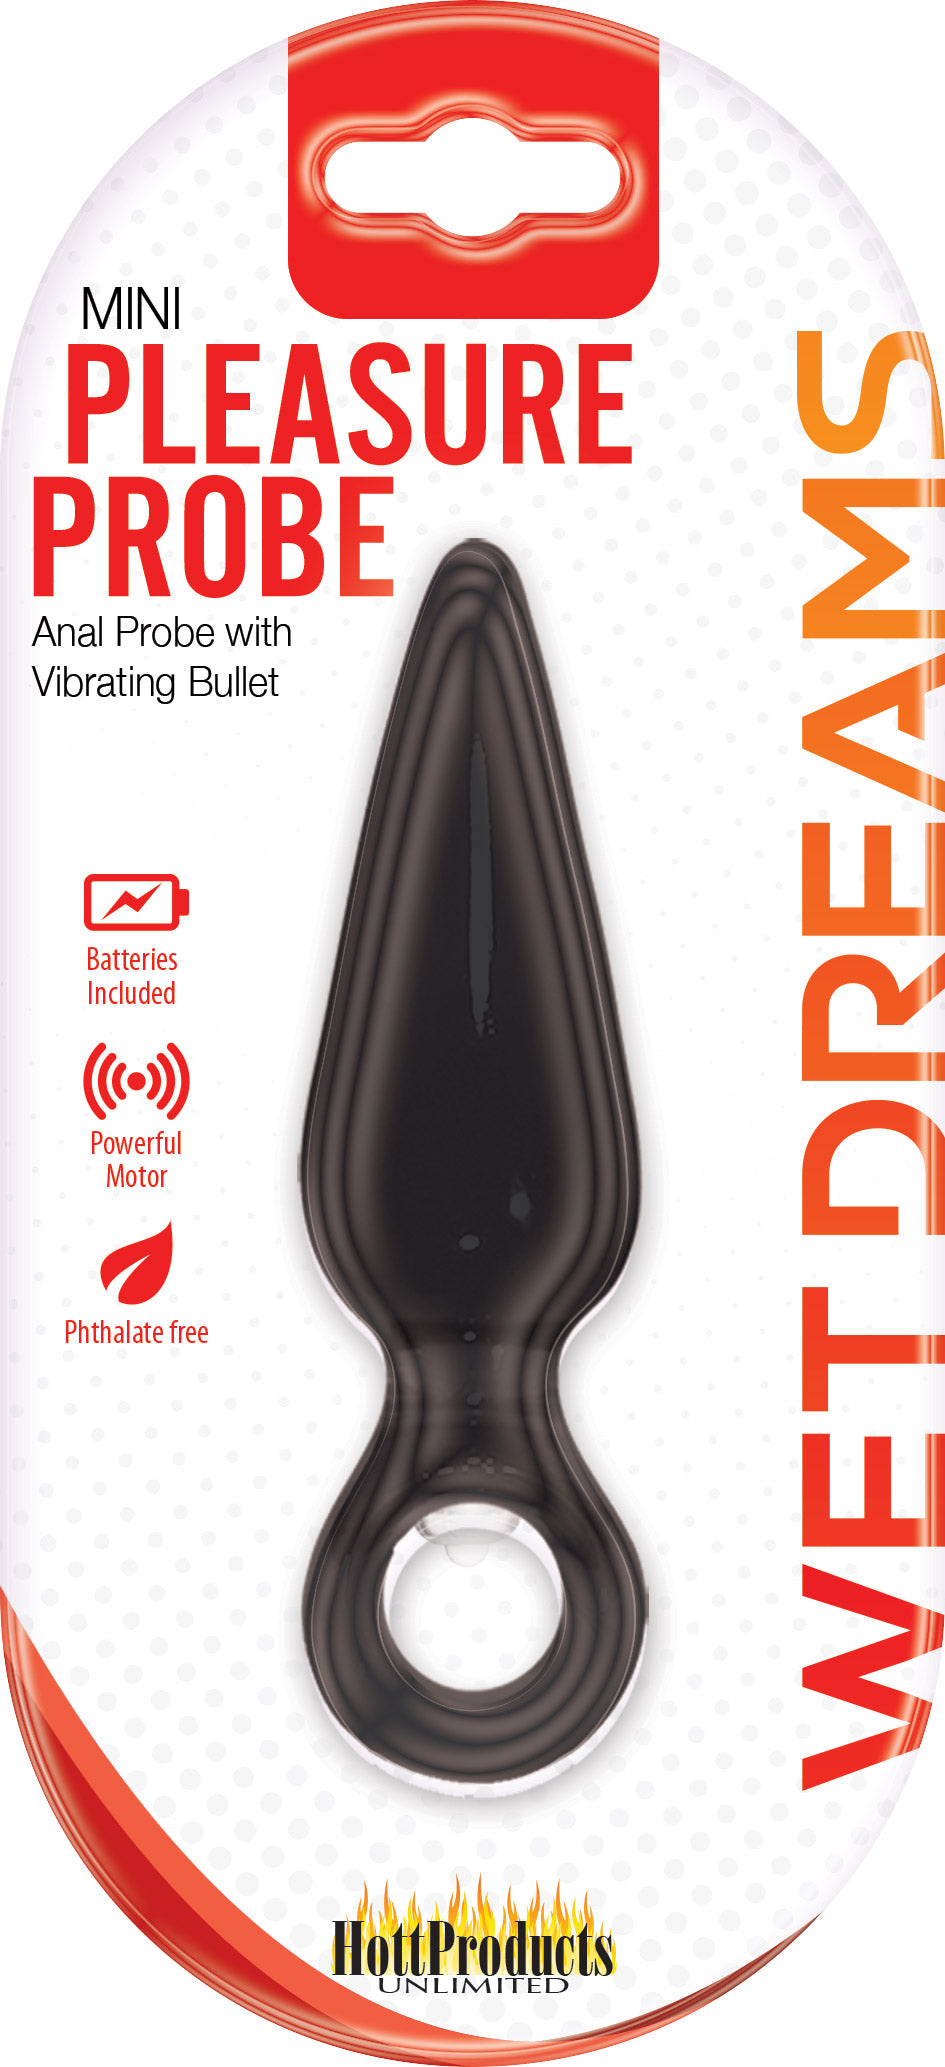 Wet Dreams Slender Mini Pleasure Probe Vibrator - Black